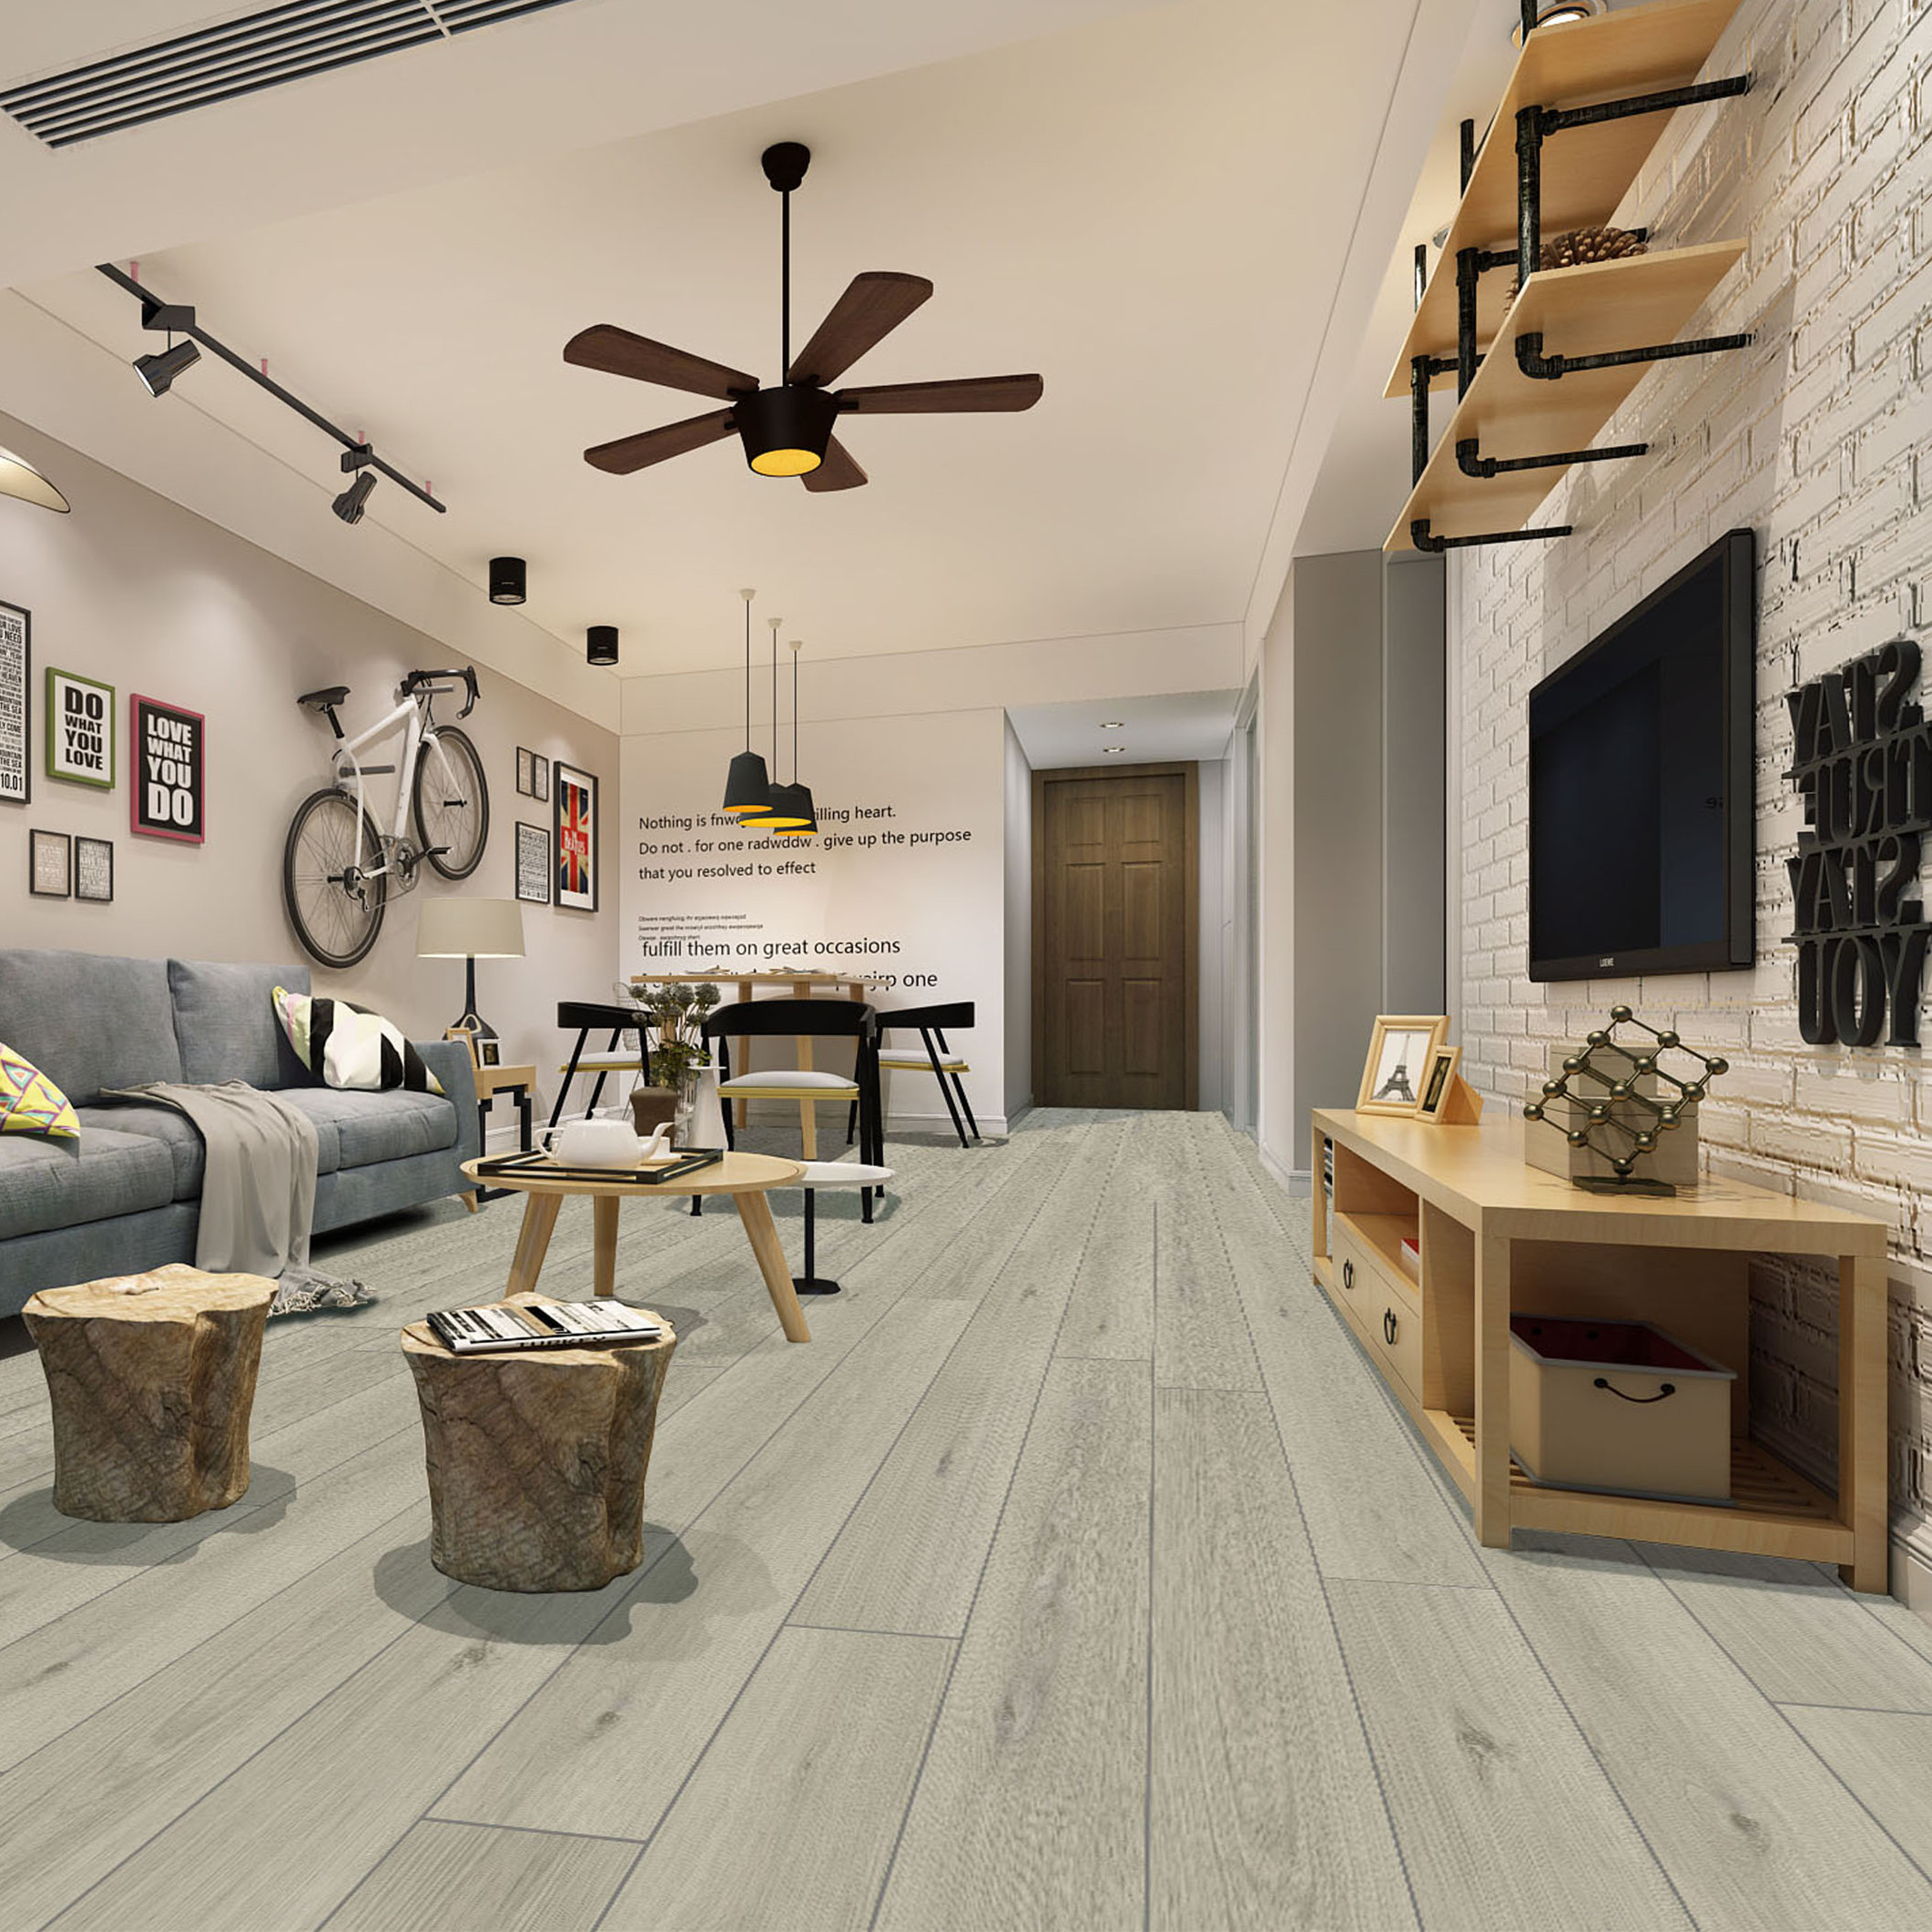 2020 New Style Wpc Decking Grey -
 Kangton LVT PVC Flooring Tile /lvt pvc flooring /pvc flooring – Kangton